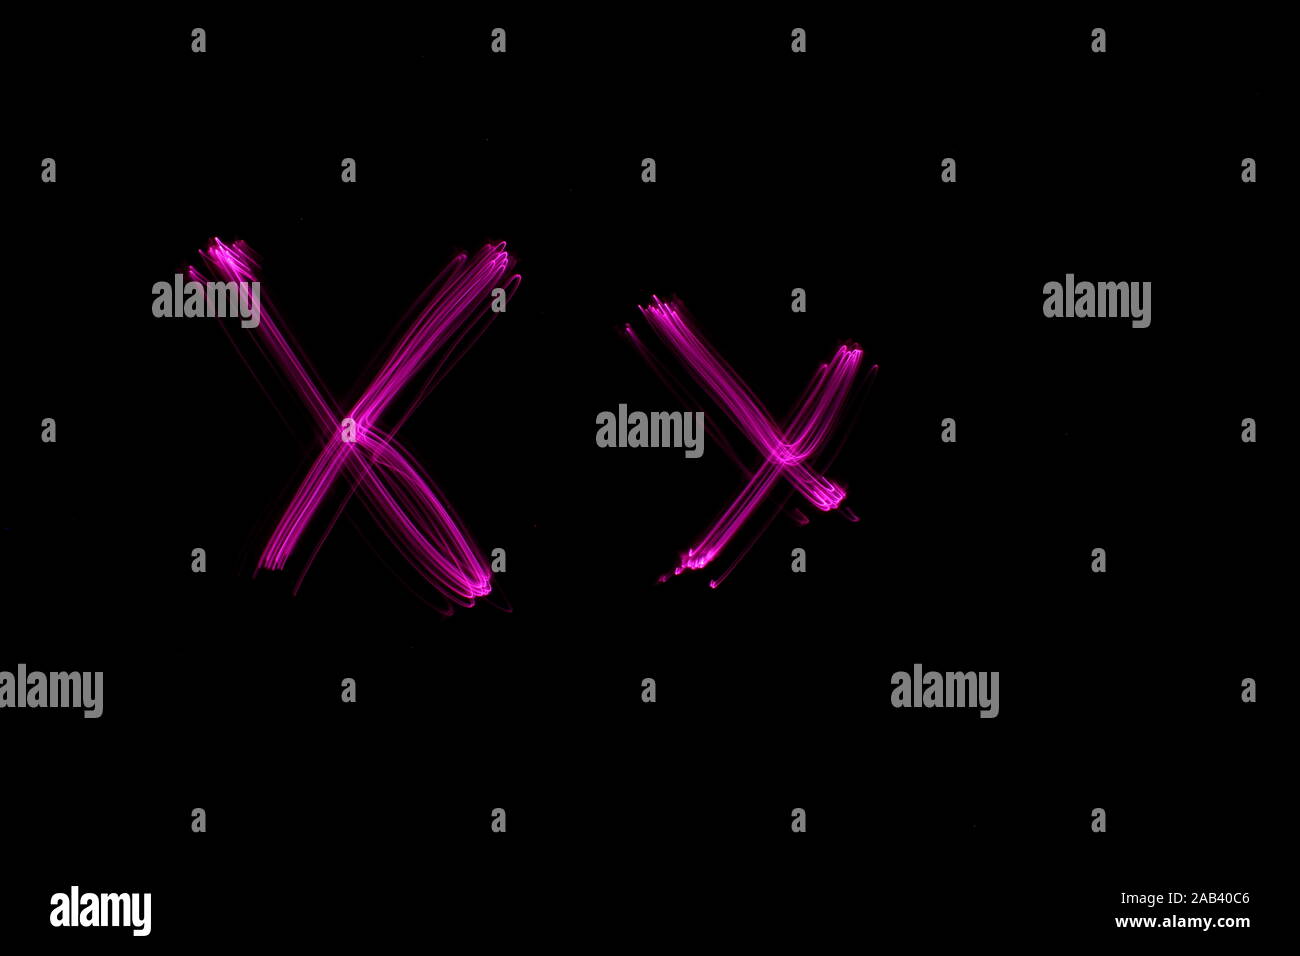 Une longue exposition photographie de la lettre x de couleur rose, en majuscules et minuscules, motif de lignes parallèles sur un fond noir. Banque D'Images